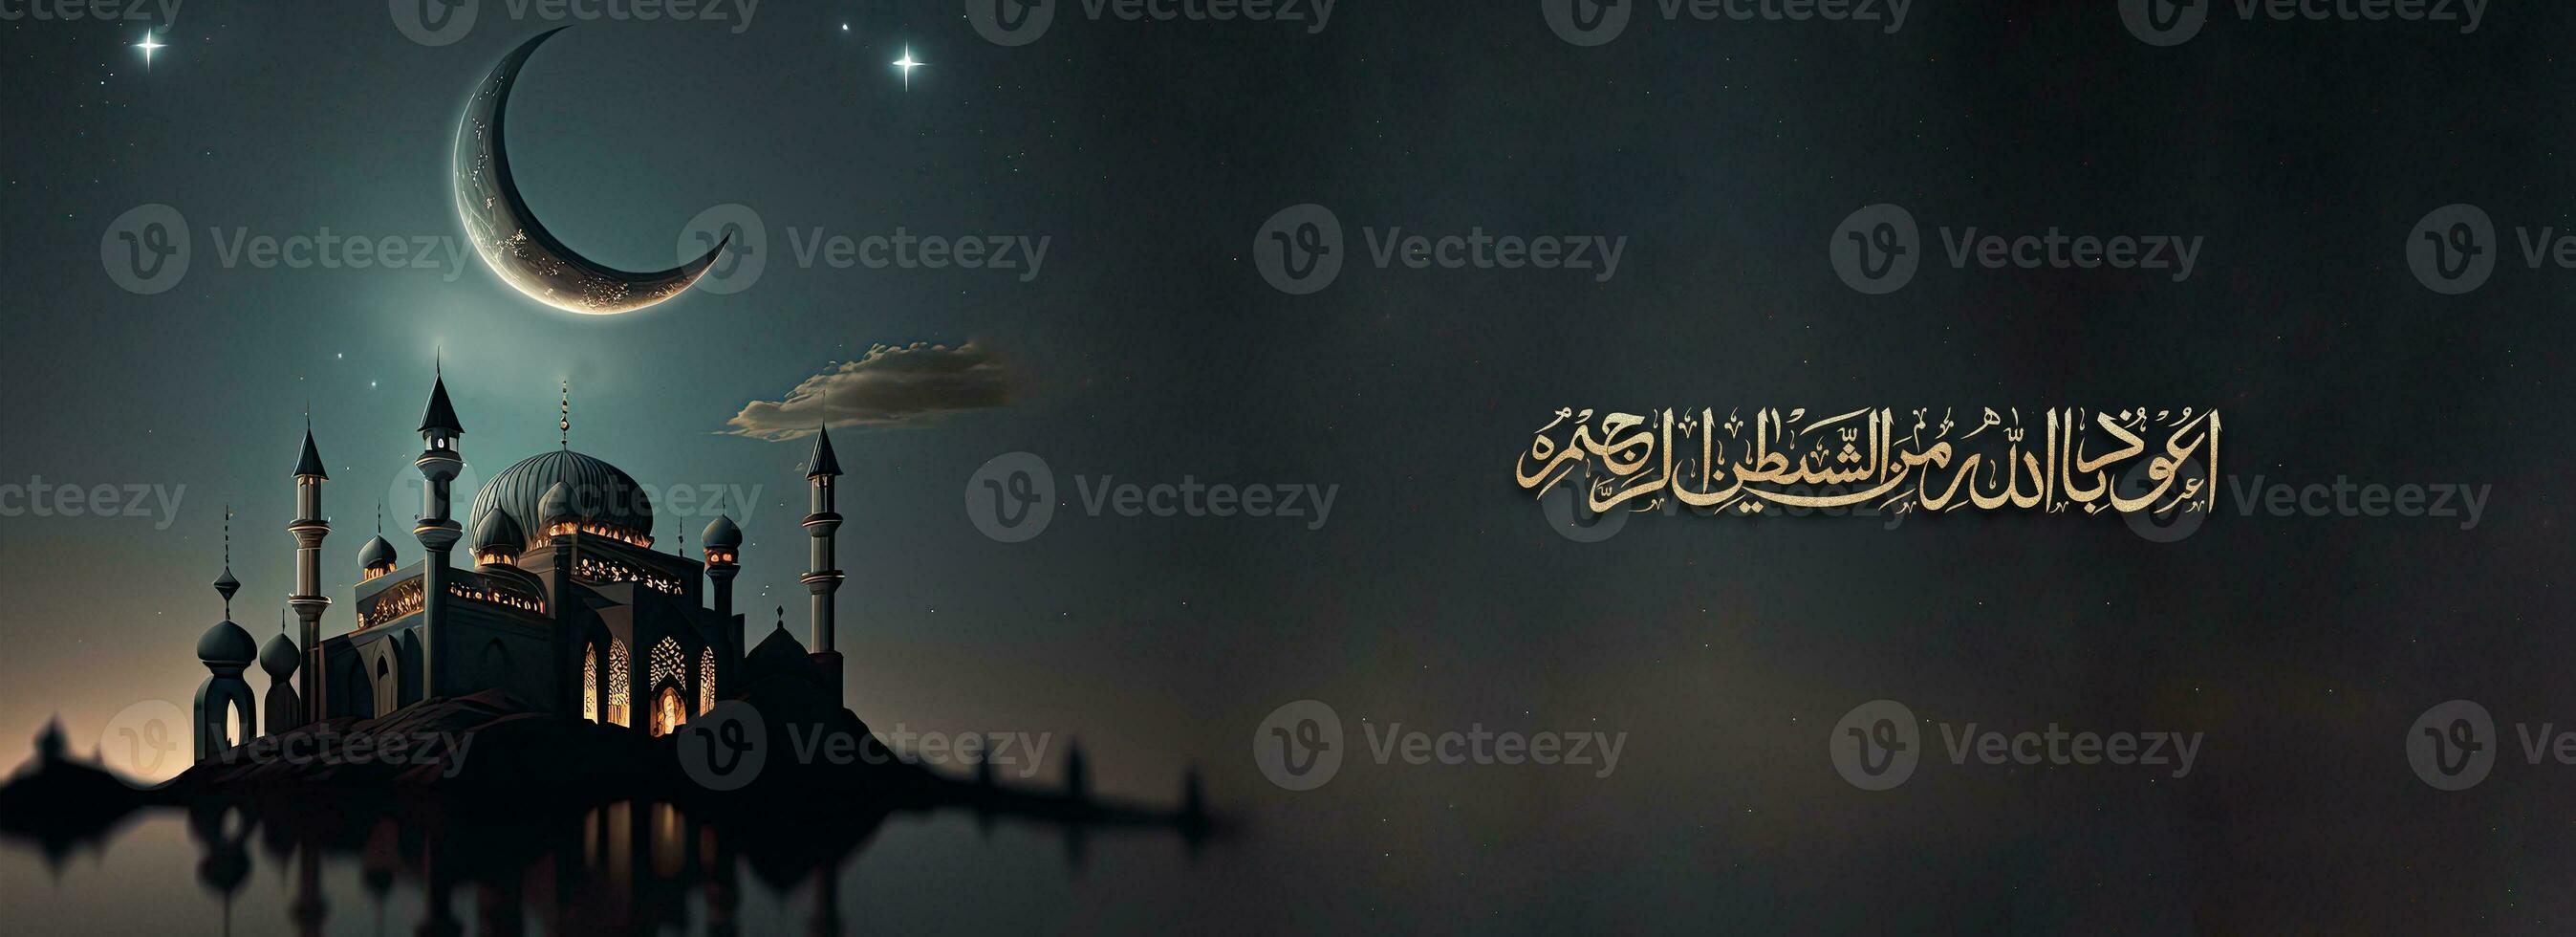 dourado brilhante árabe islâmico caligrafia do desejo medo do Alá traz inteligência, honestidade e amor e 3d render do mesquita, crescente lua noite fundo. foto